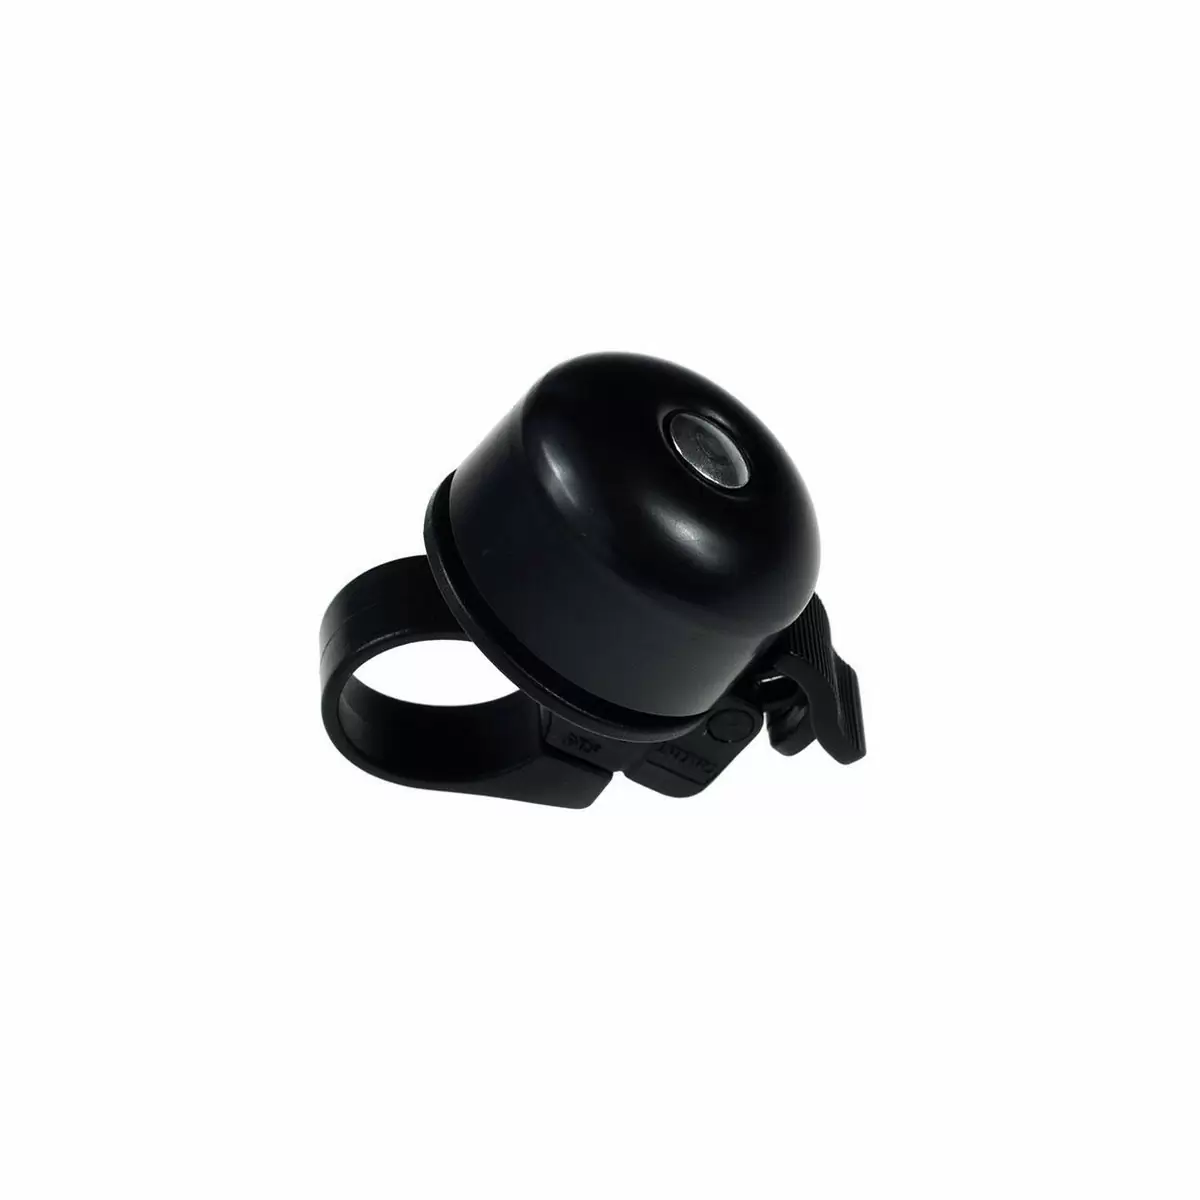 Abrazadera de aleación mini campana negra - image